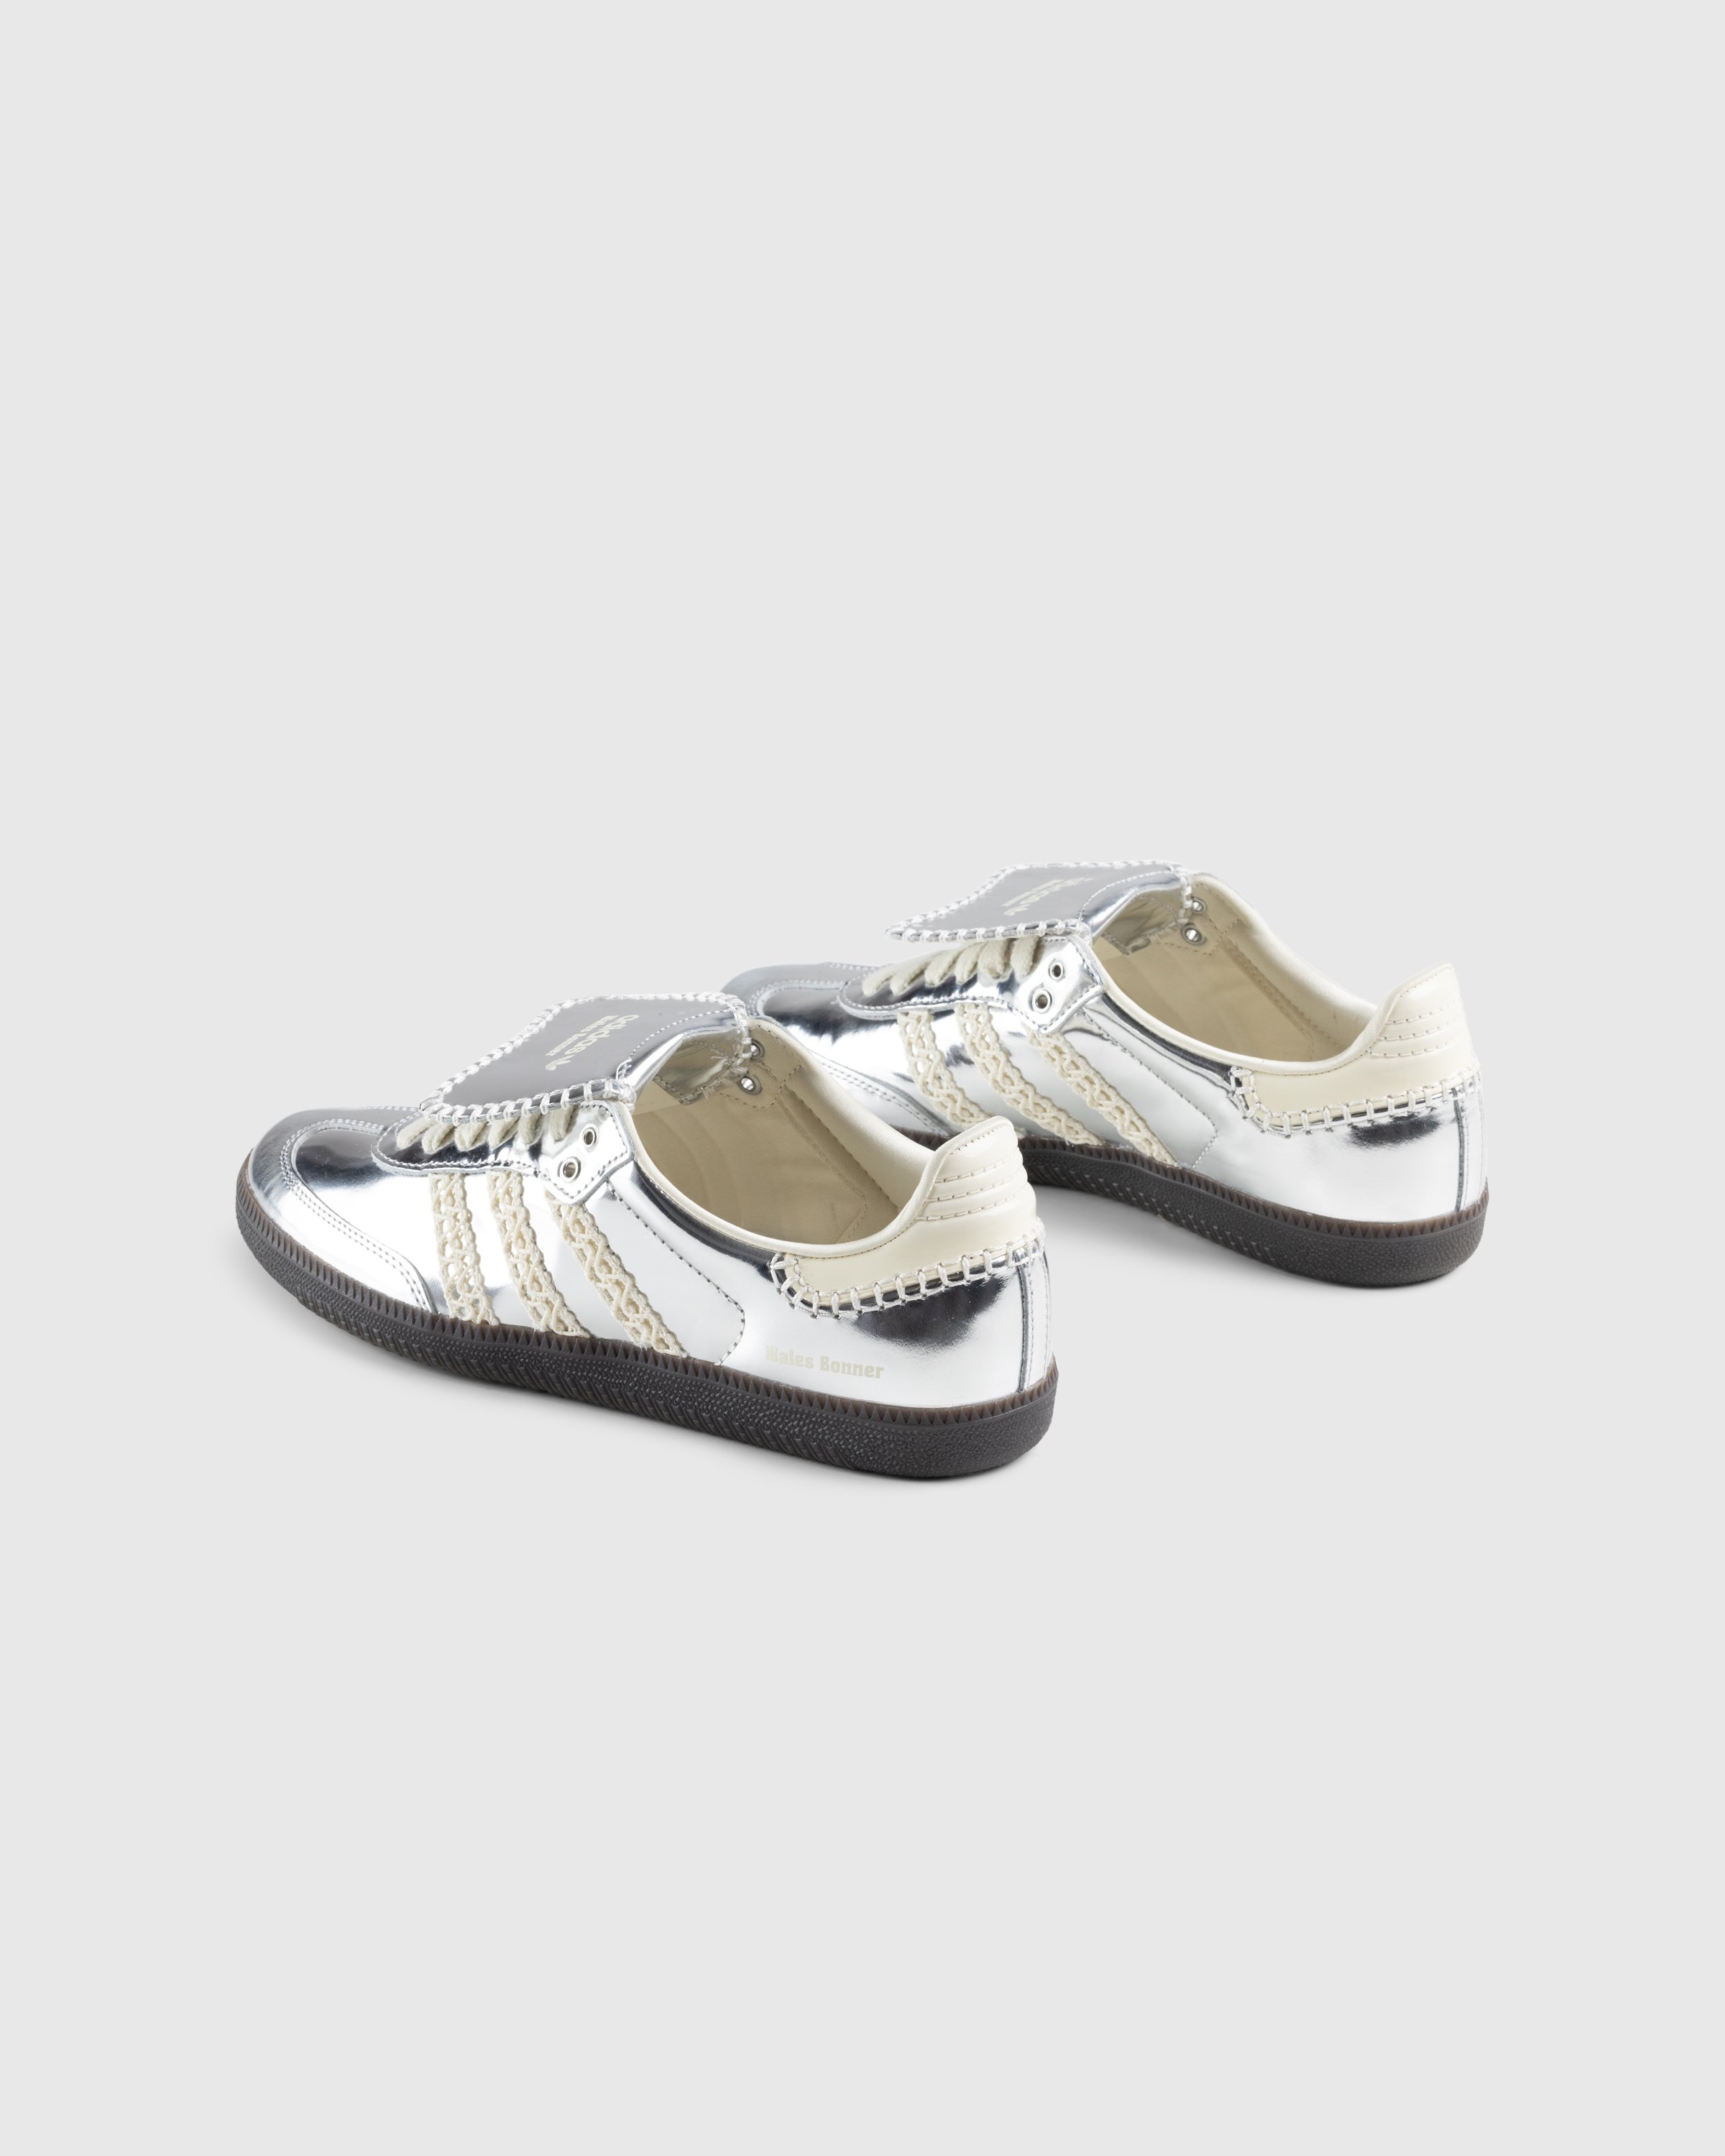 Adidas x Wales Bonner - Samba Metallic Silver/Cream White/Grey - Footwear - Silver - Image 4